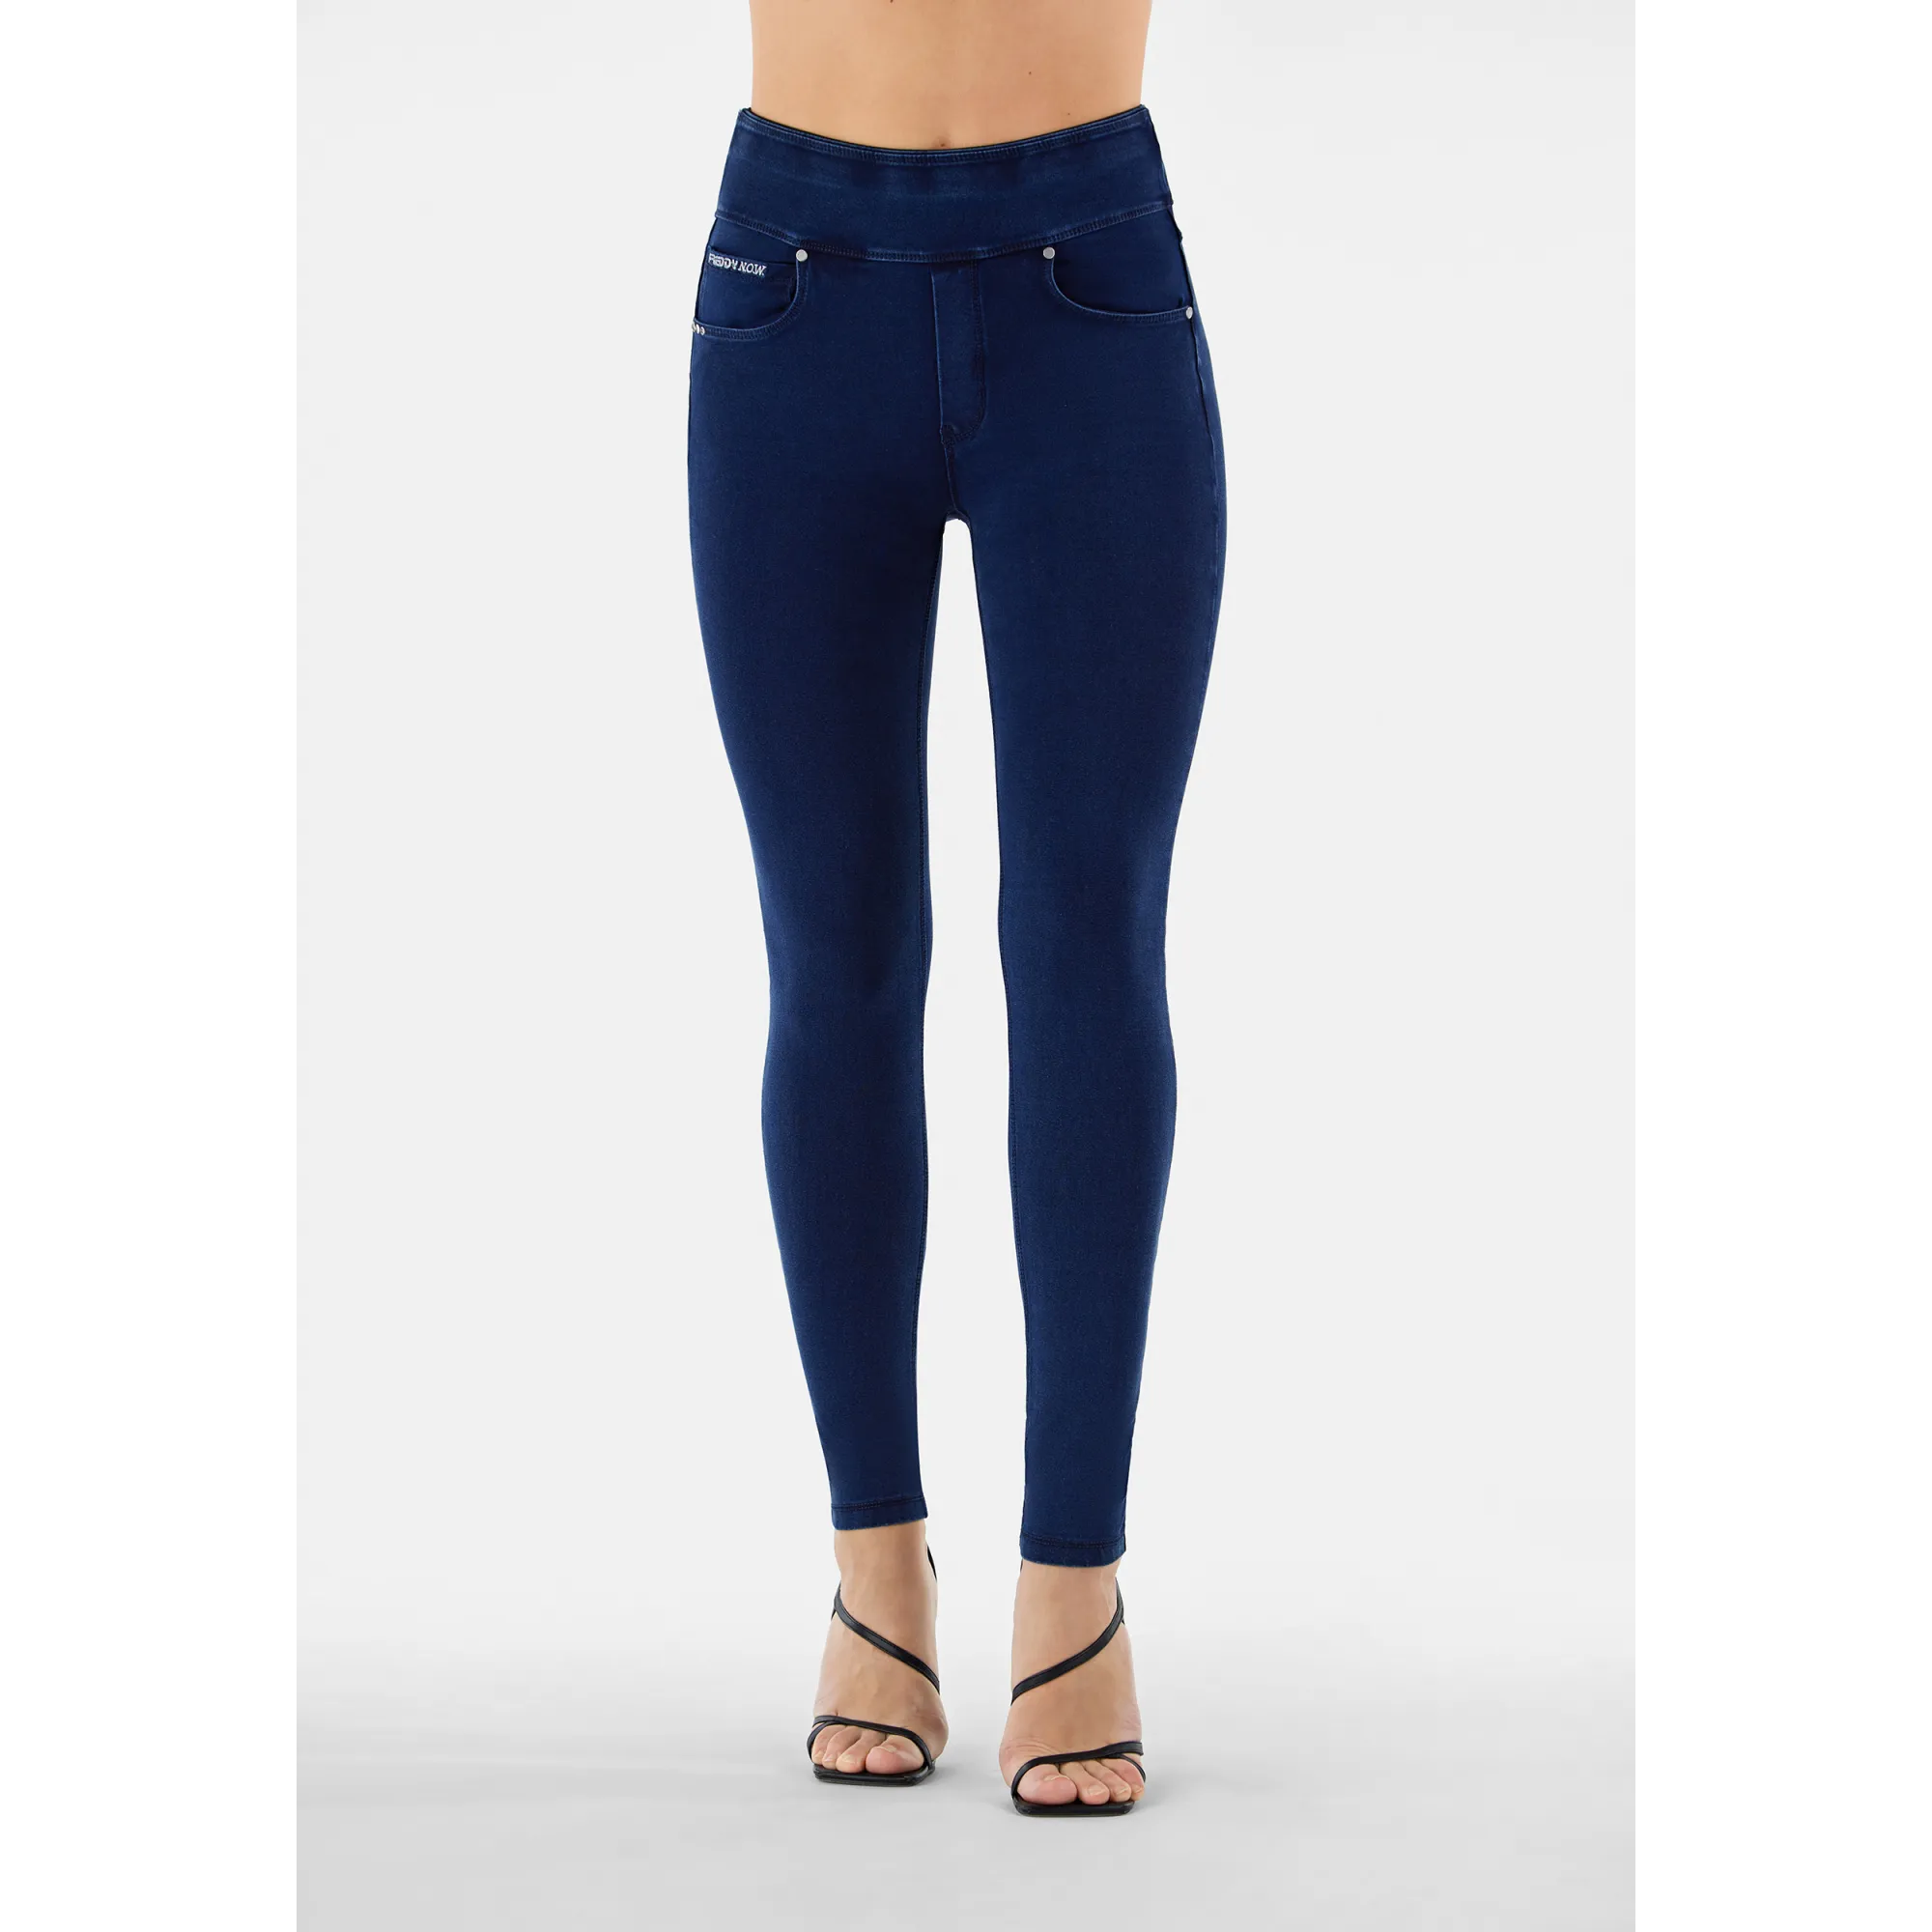 Freddy N.O.W.® Yoga Damen Comfort Hose - Skinny - Indigoblau - Blaue Nähte